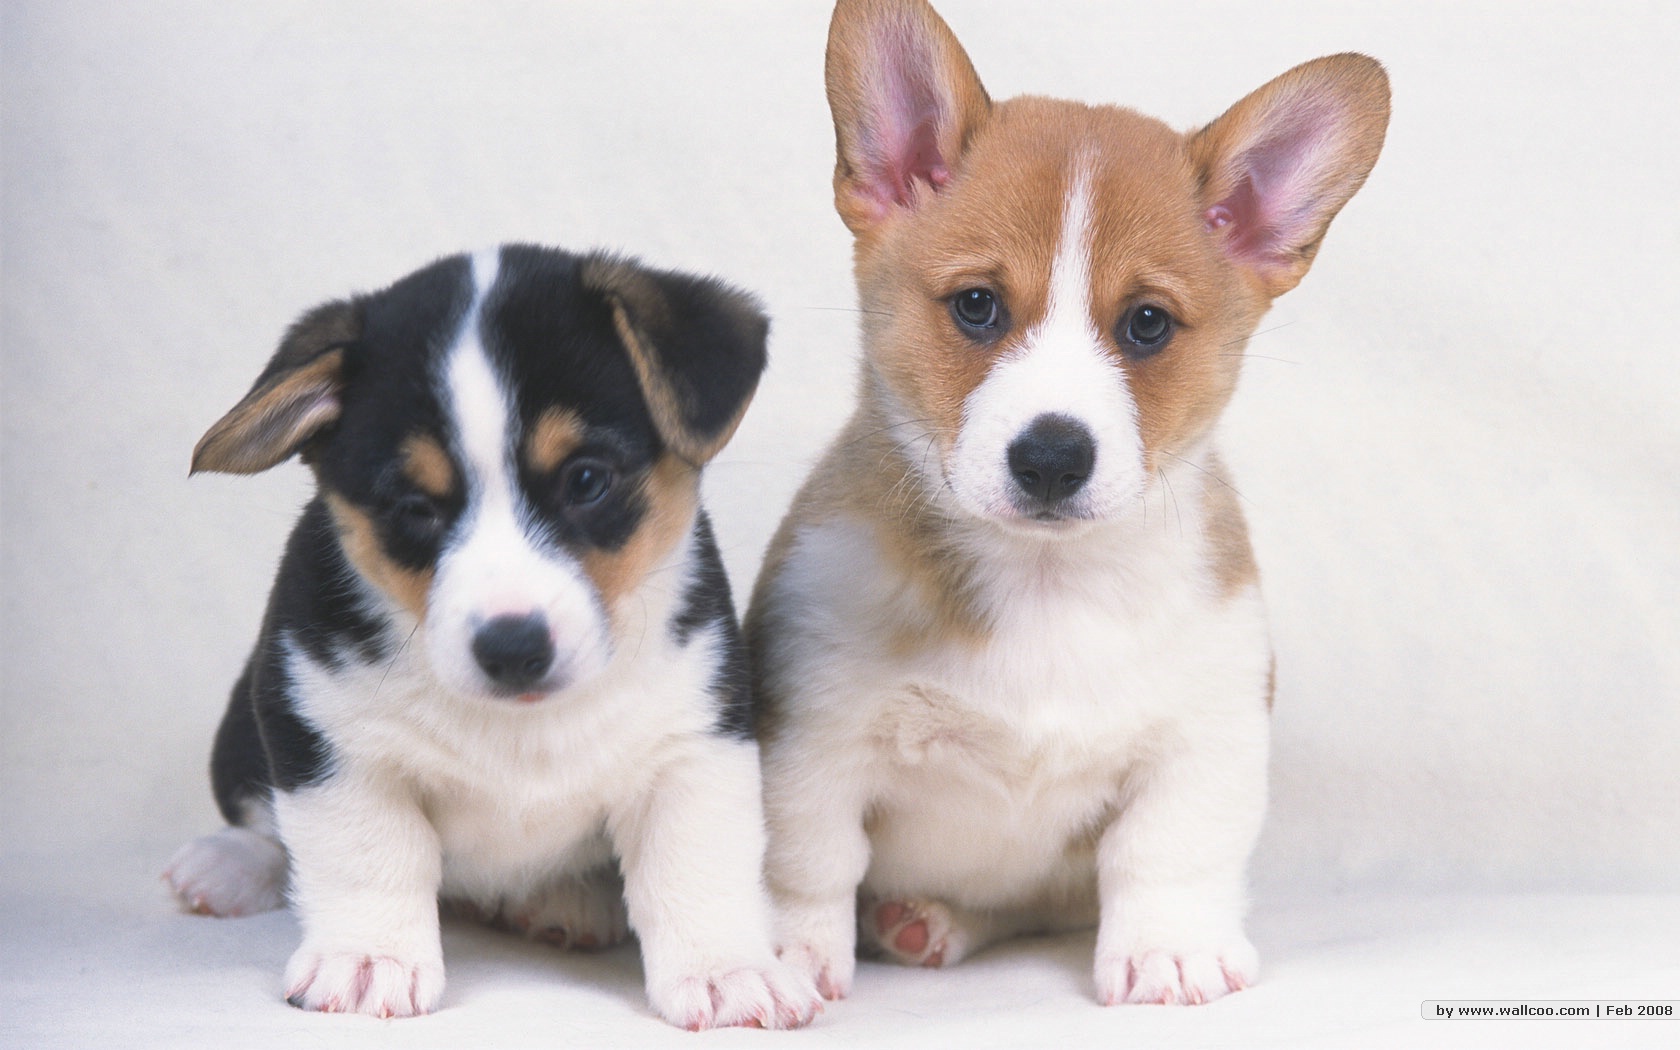 壁纸1024×768宠物小狗宝宝壁纸 Lovely Puppy dogs Baby Puppies Wallpaper壁纸,家有幼犬-可爱小狗 ...